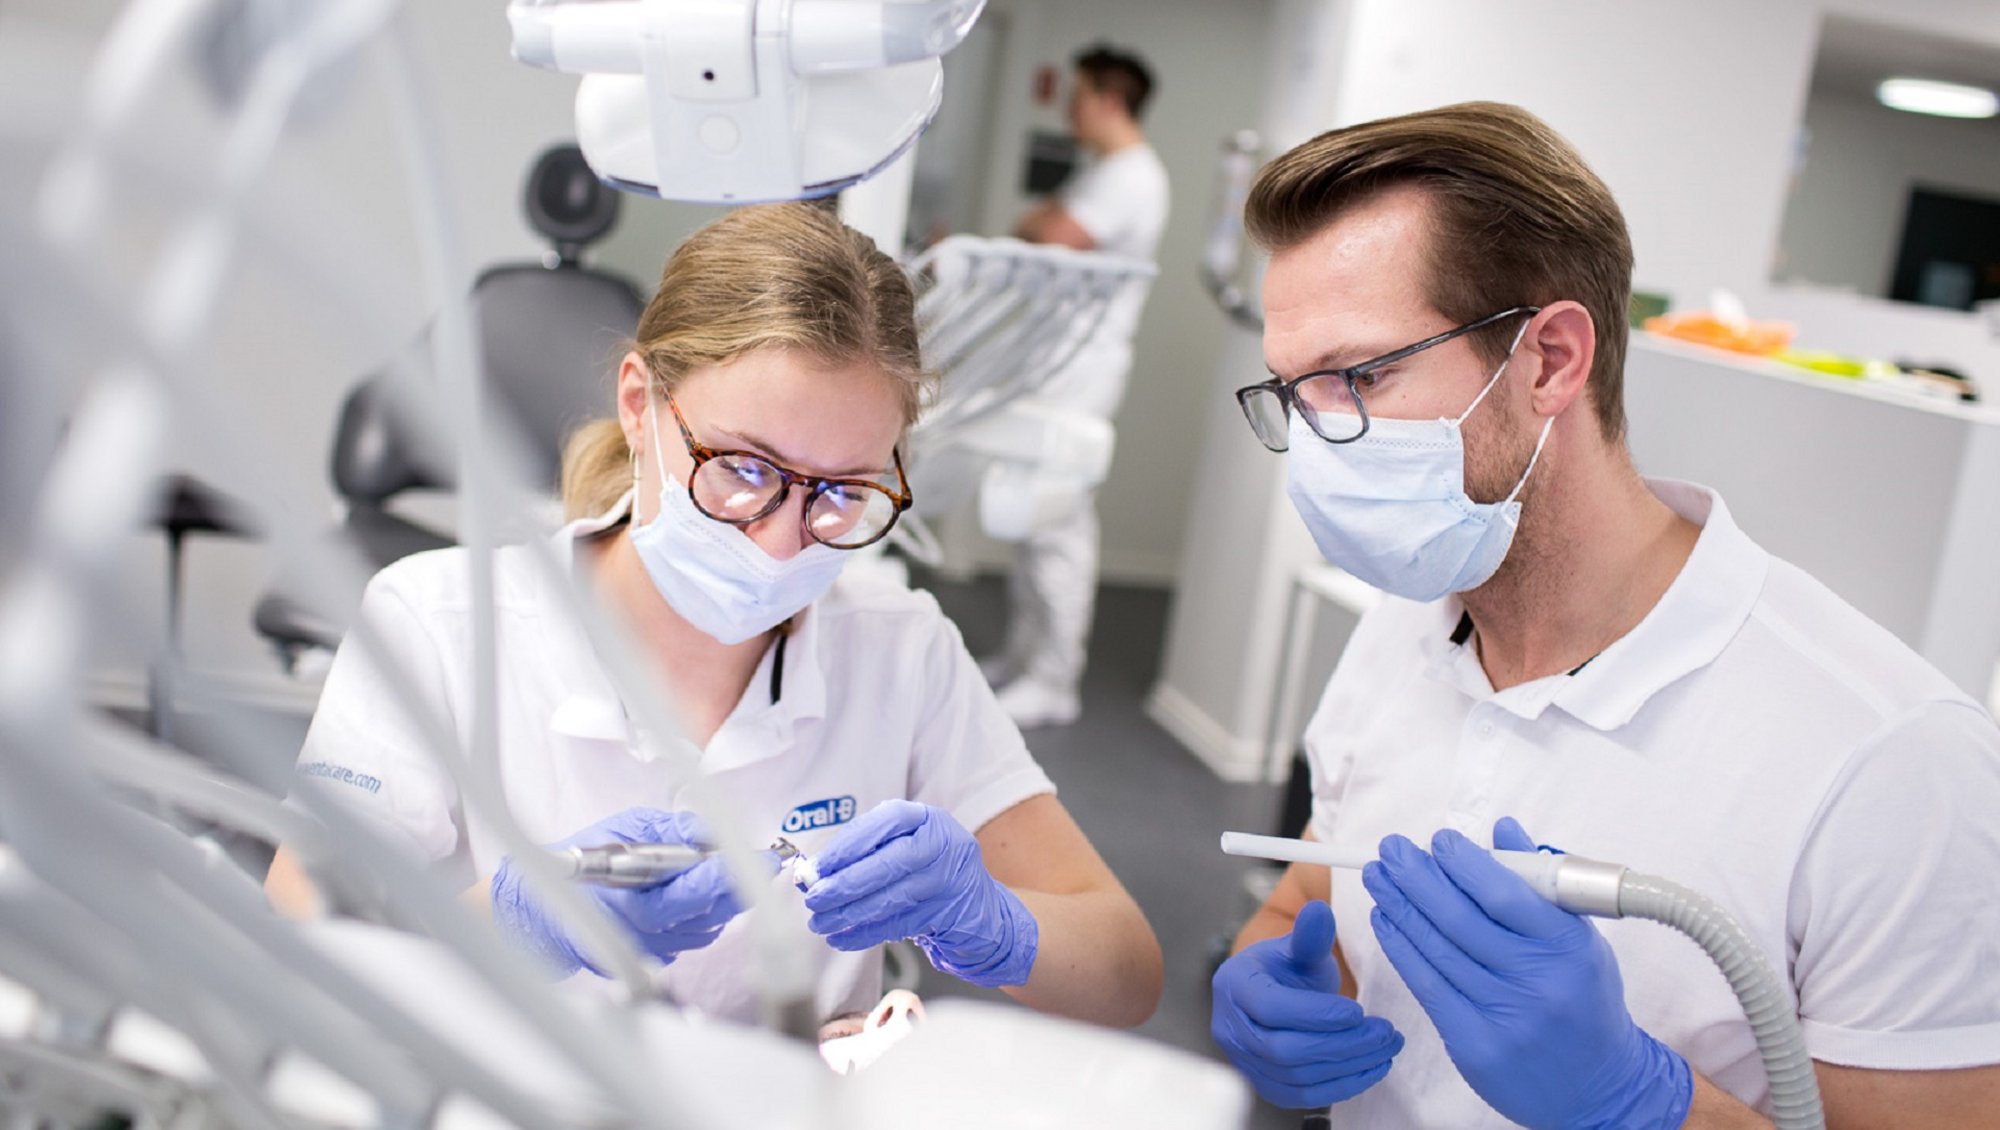 Tandlægestuderende der øver sig i klinikken Foto: Lars Kruse